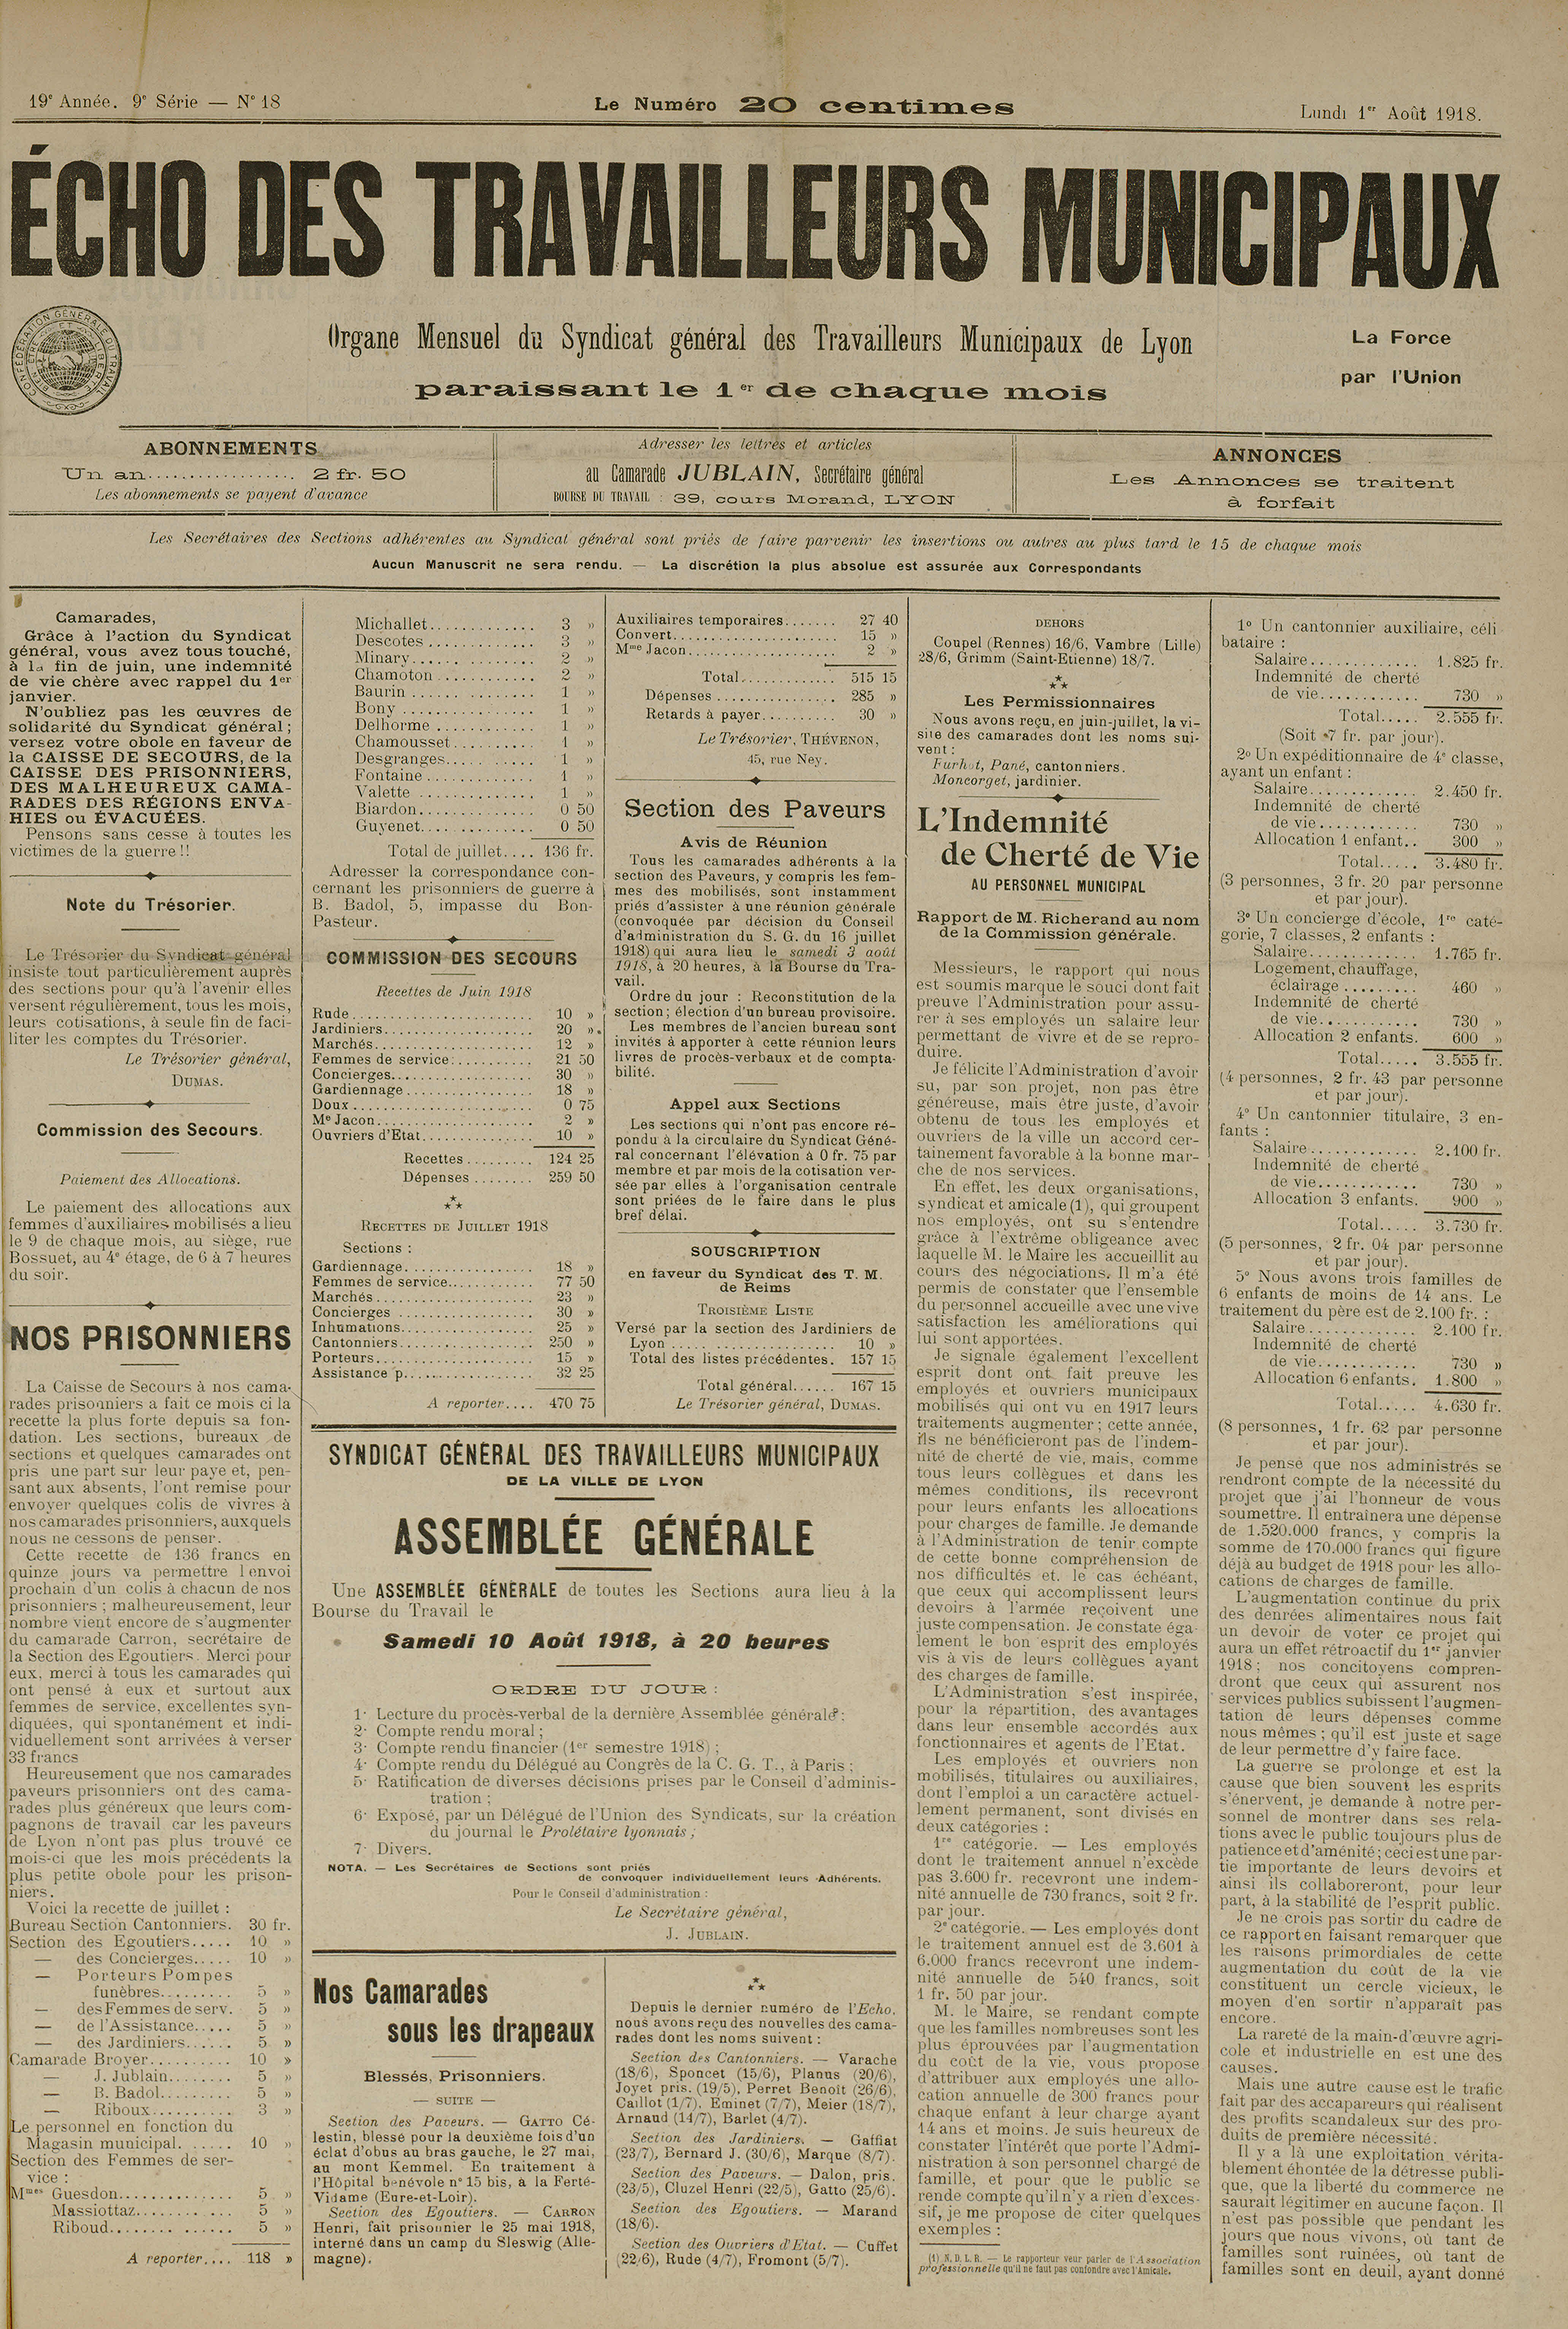 Exemples d'indemnité de cherté de la vie votée lors de la séance du Conseil municipal du 24/06/1918, extrait de L'Echo des travailleurs municipaux du 1/08/1918 - 2C/425245